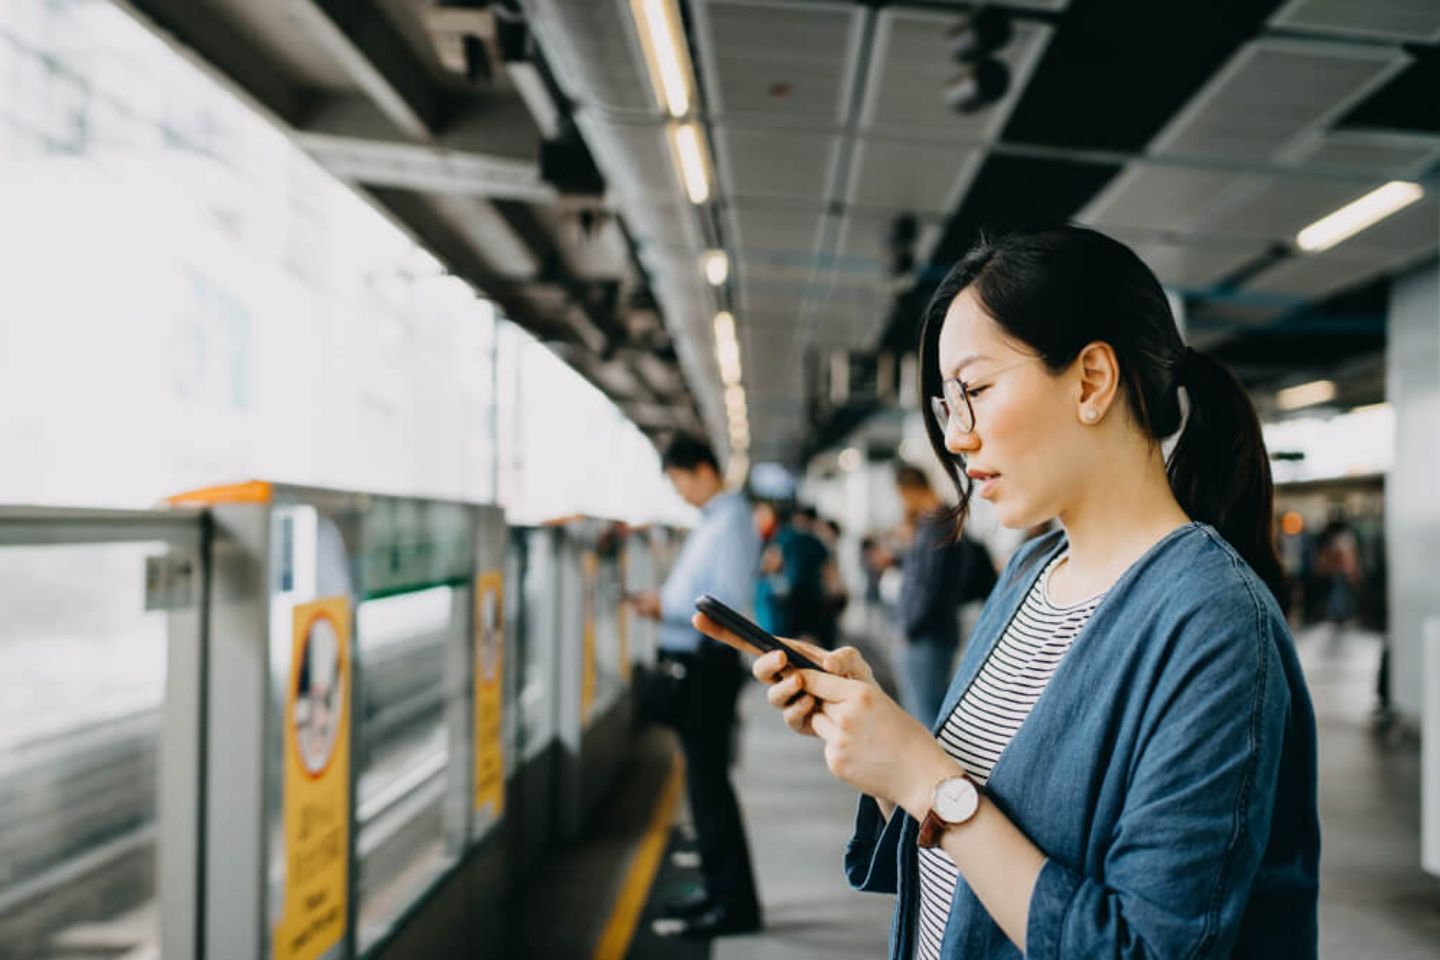 Mulher usando smartphone na plataforma de uma estação de metrô